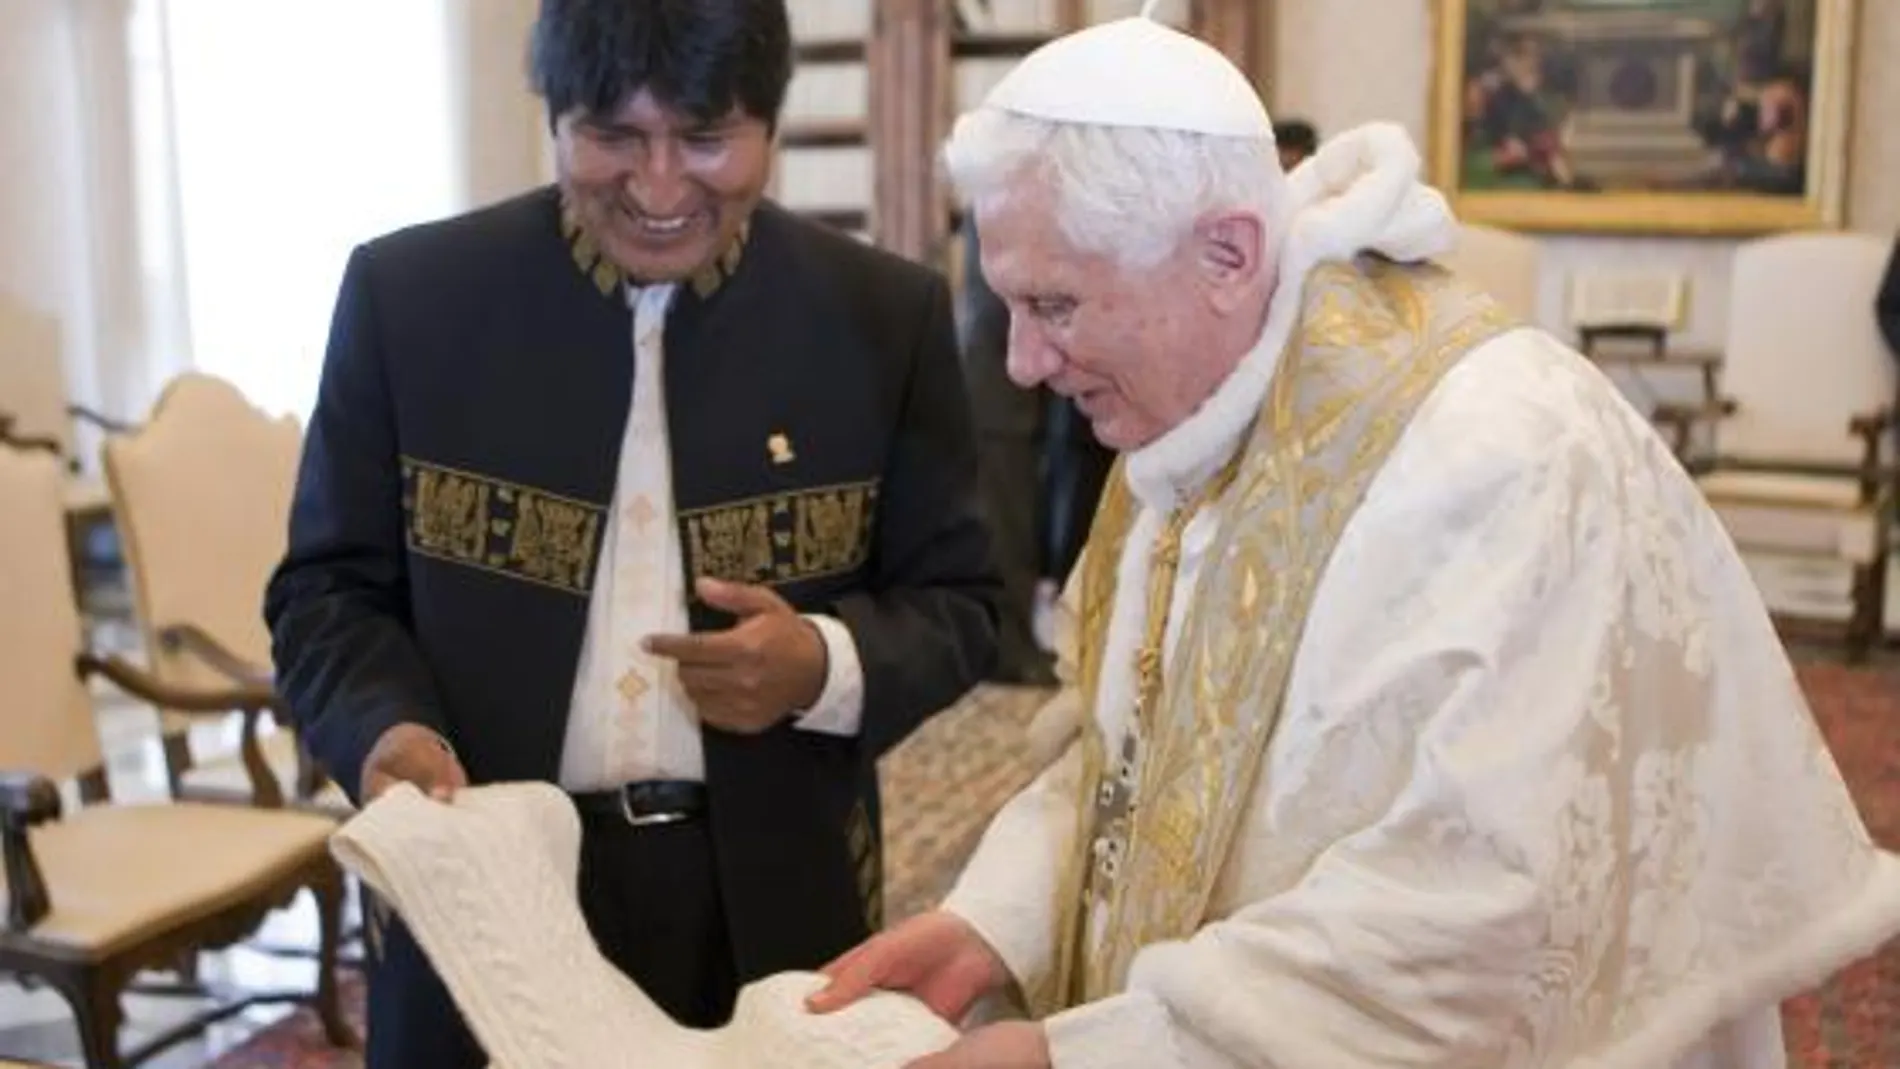 El Papa recibe a Evo Morales durante 25 minutos